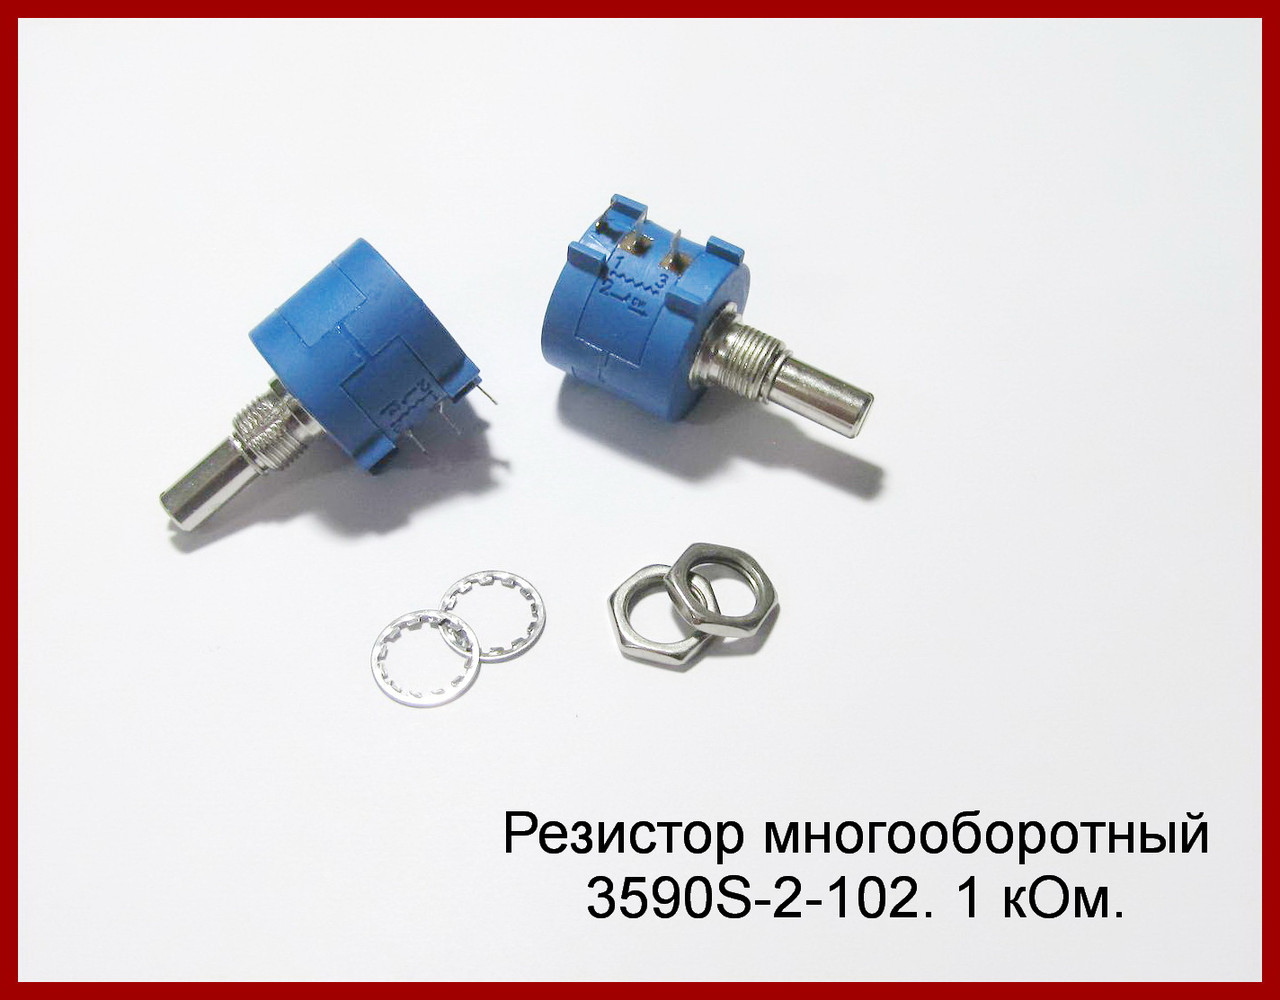 Резистор багатообертовий 3590S-2-102L, 1 kom.